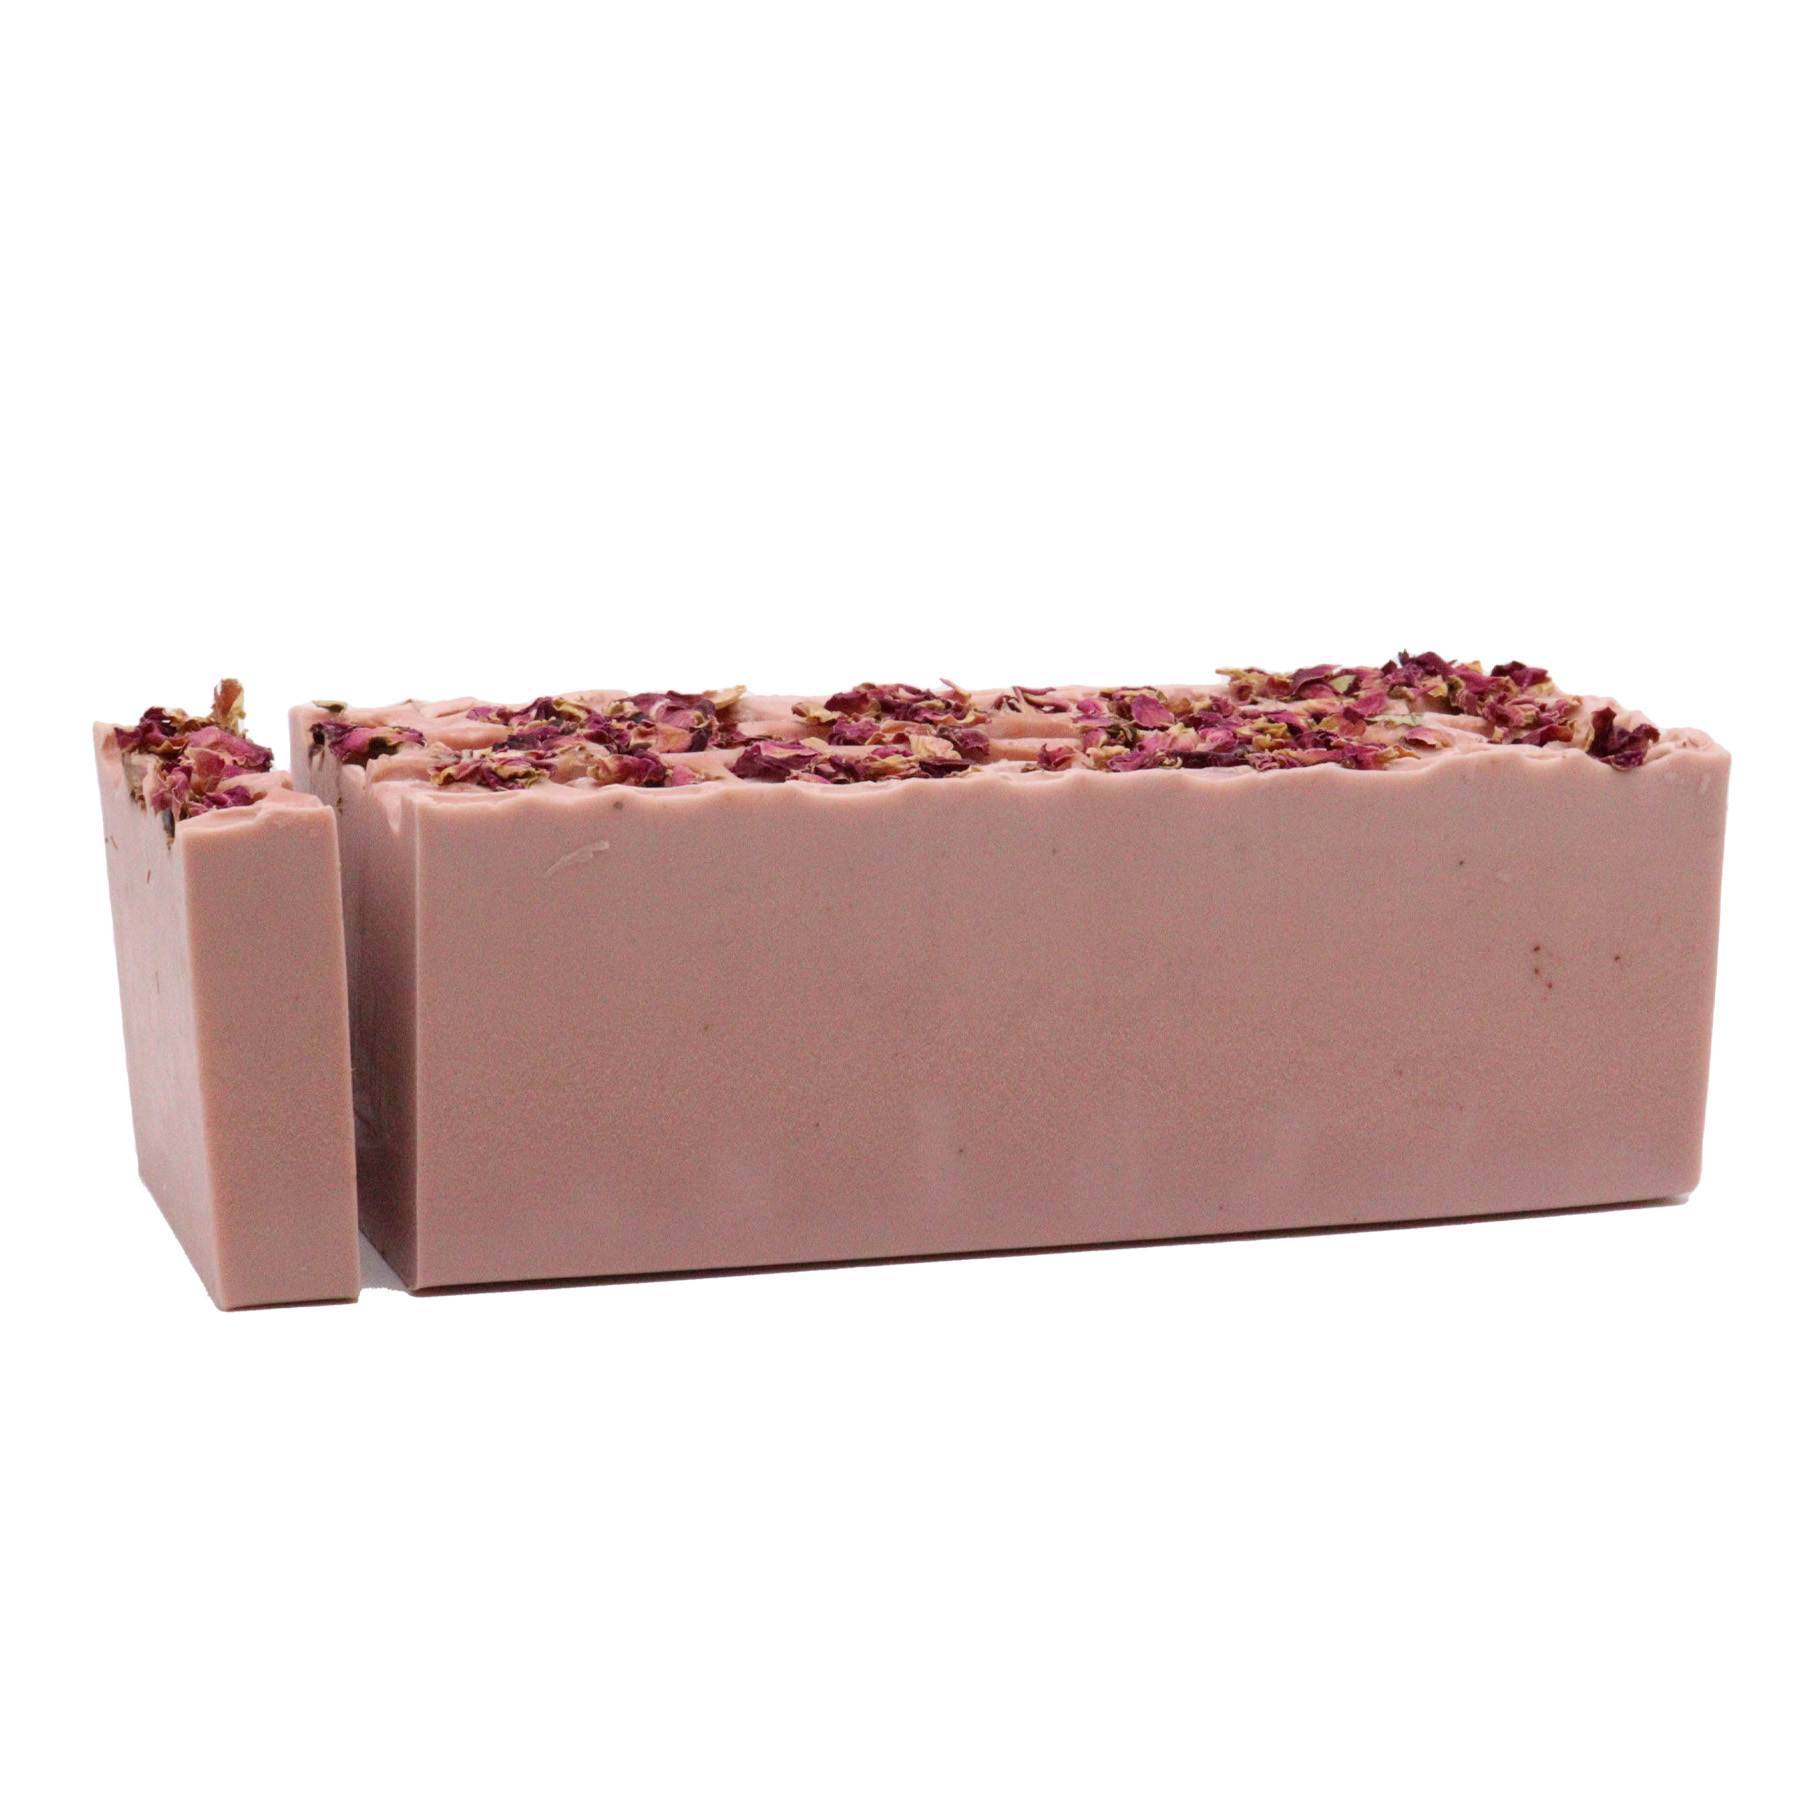 Enchanted Rose Soap Loaf